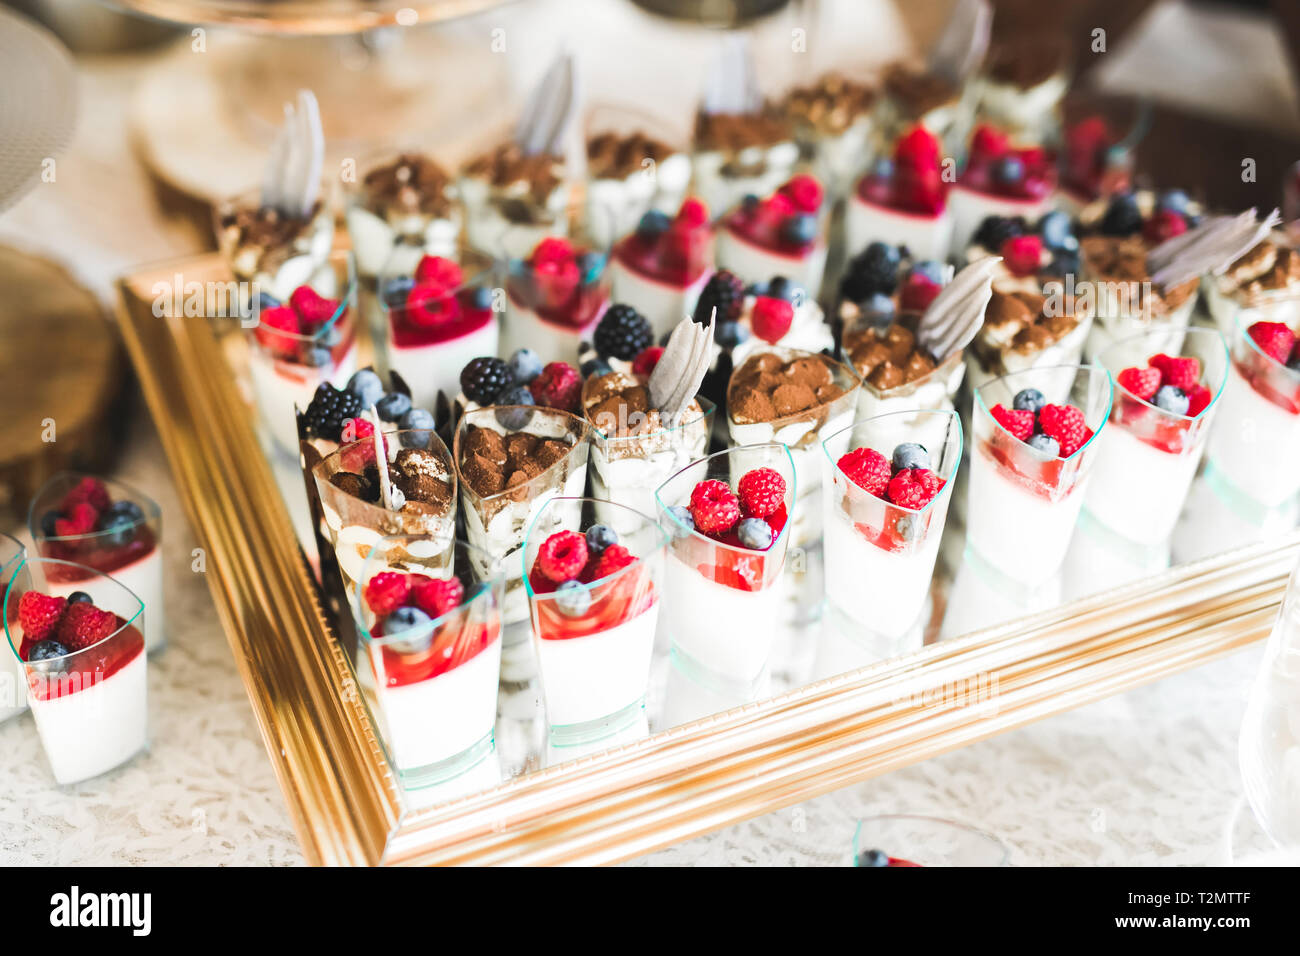 Leckere Süßigkeiten auf Hochzeit candy Buffet mit Dessert, Cupcakes  Stockfotografie - Alamy